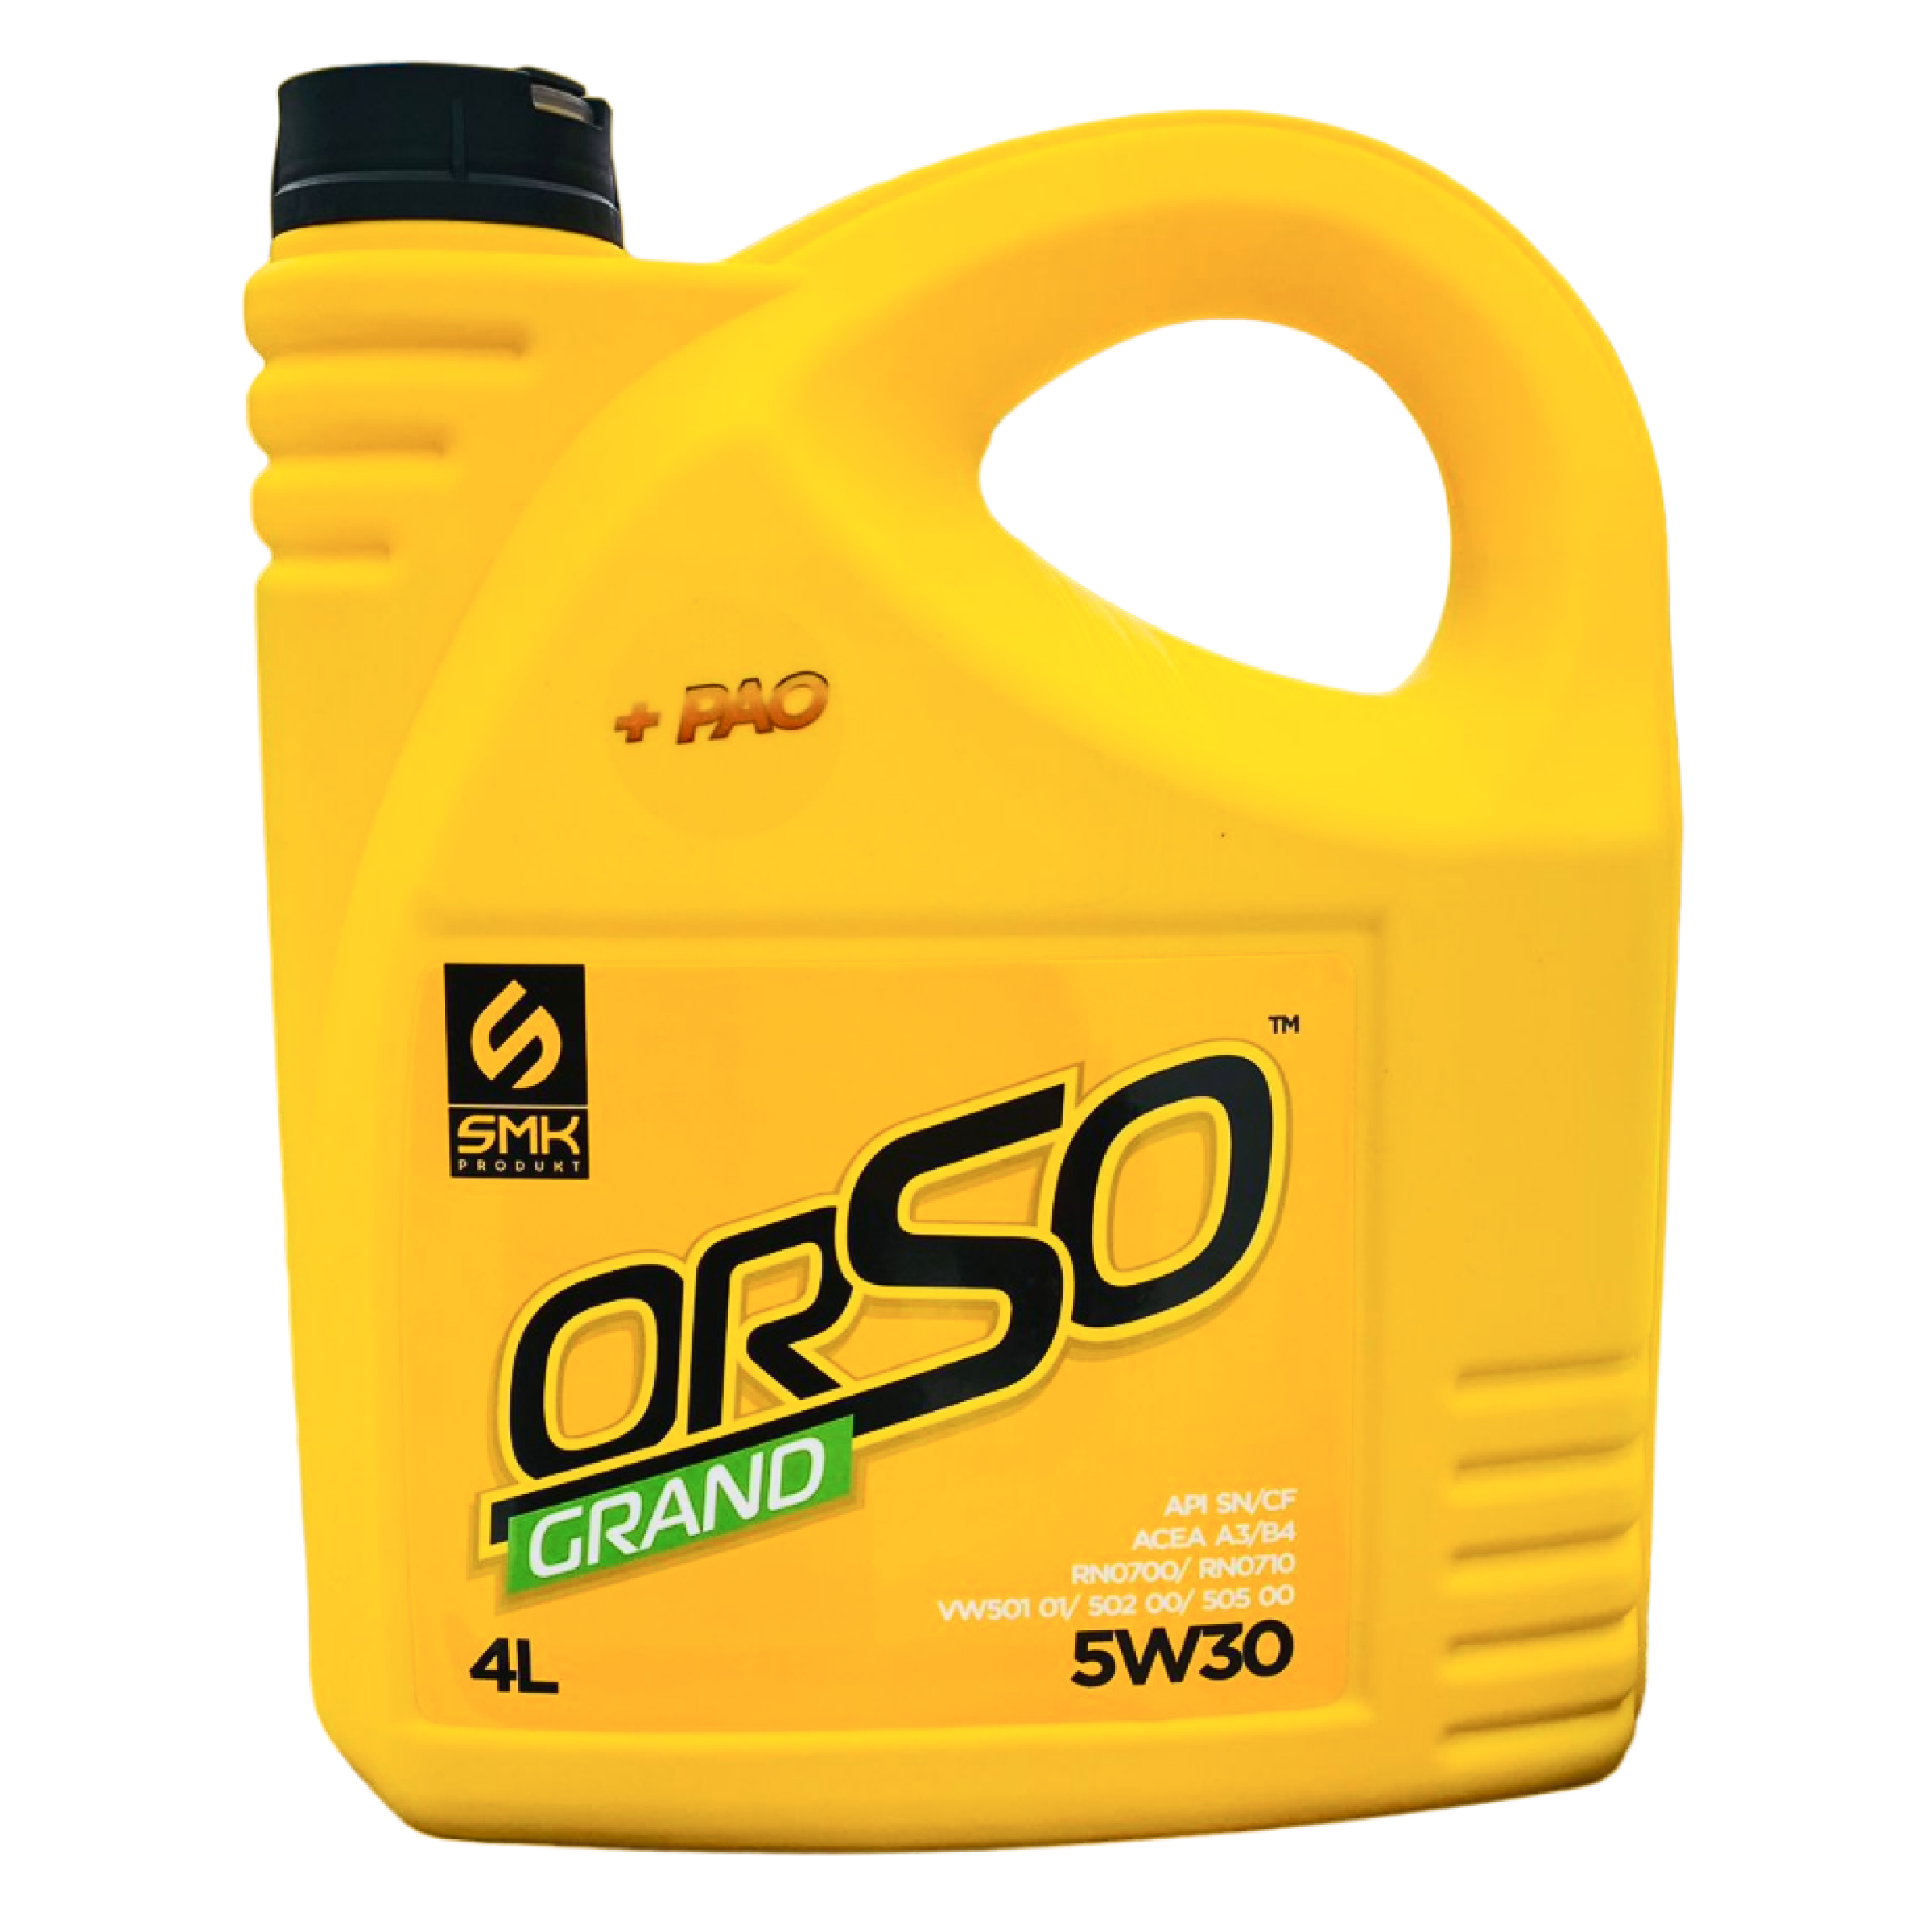 Моторное масло SMK PRODUKT Orso Grand 5w30 универсальное, полностью синтетическое, 4л.